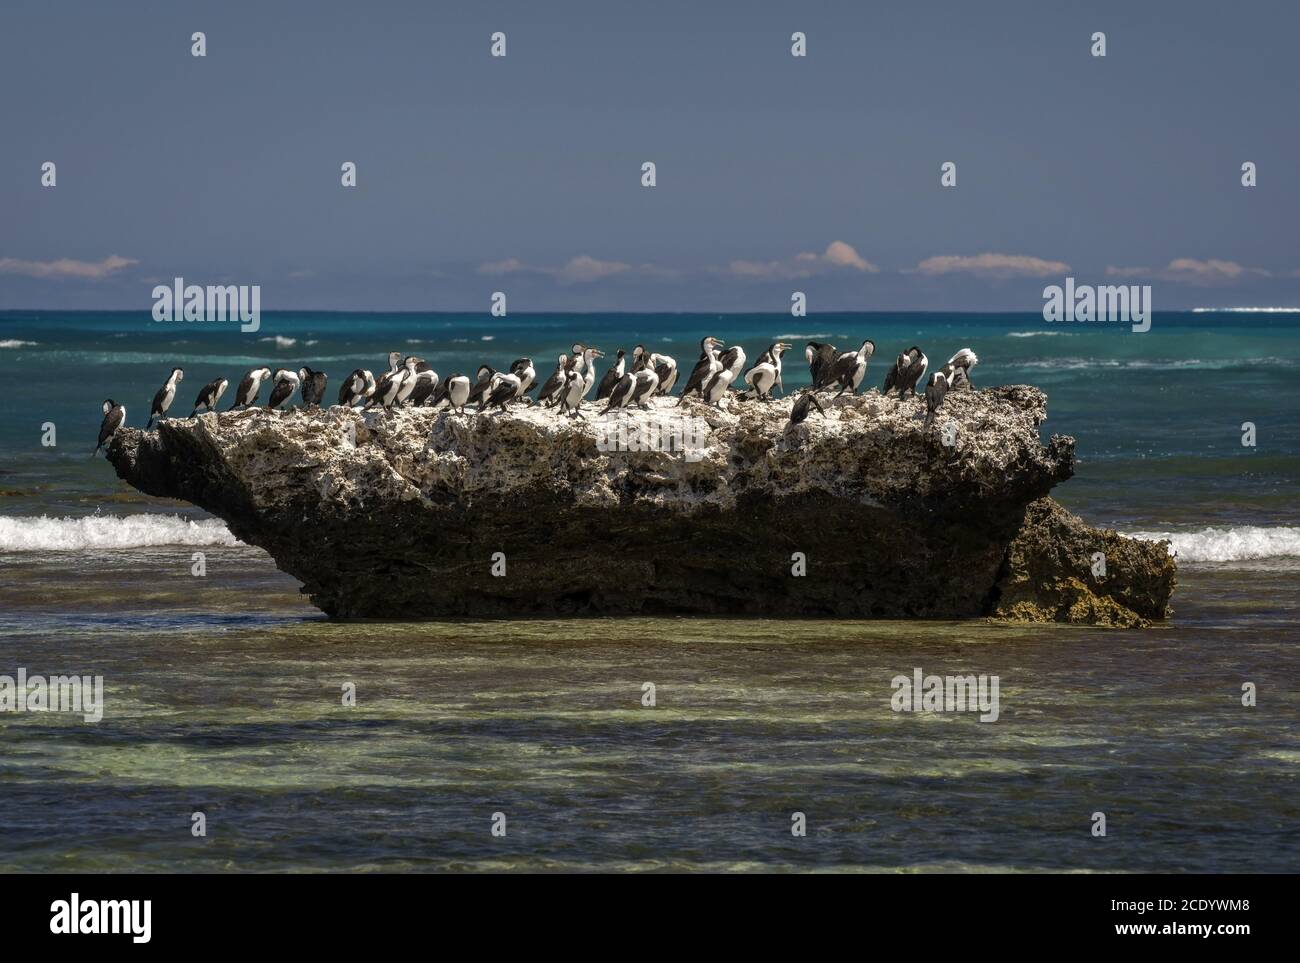 Groupe australien de Pied Cormorant à a Rock in the Ocean – Australie occidentale Banque D'Images